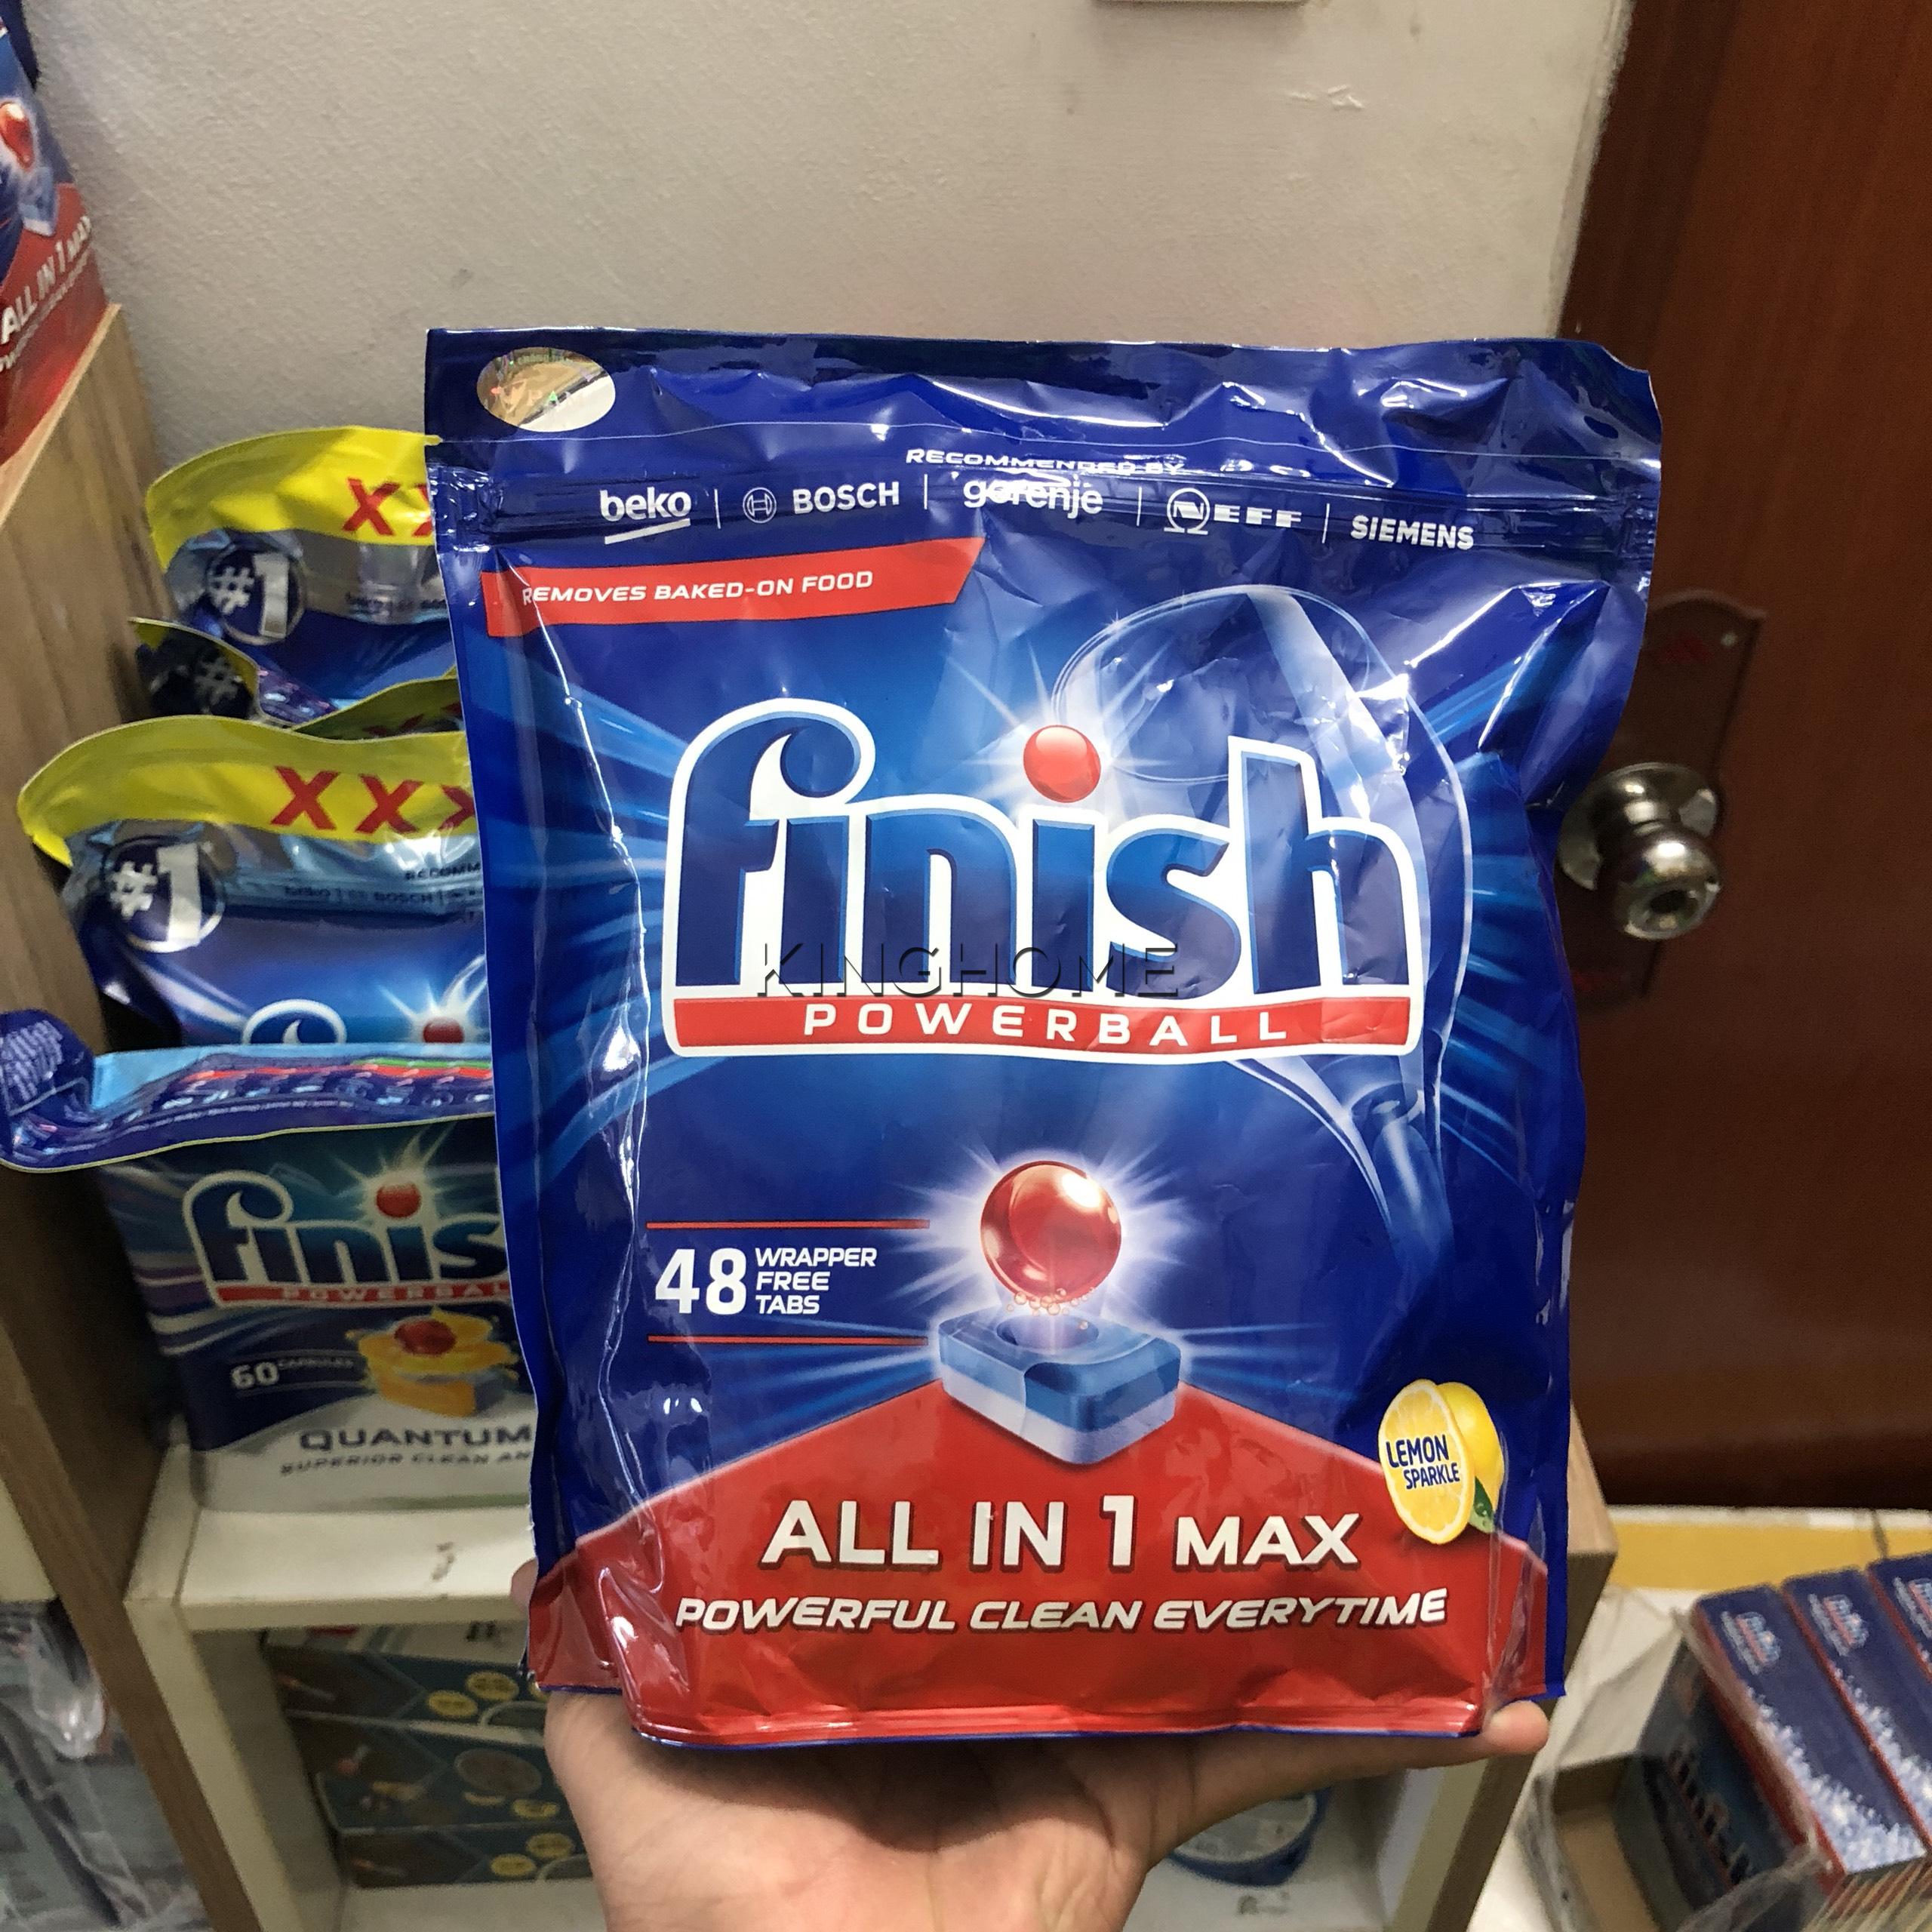 Viên rửa bát Finish All In 1 Max 80 viên - Hương chanh